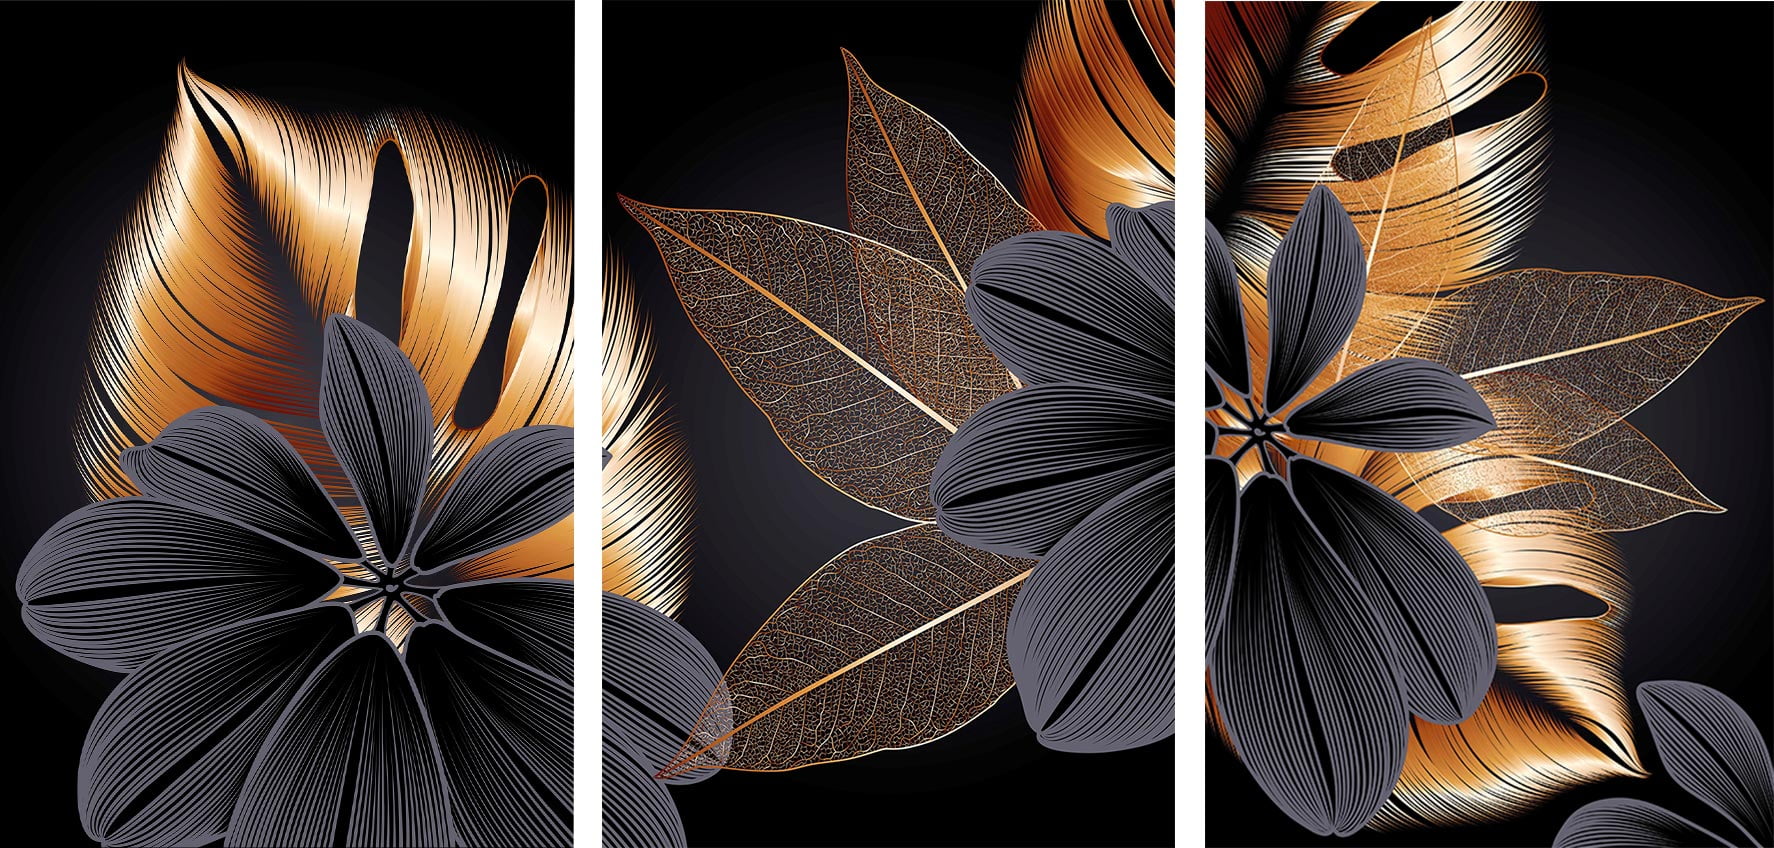 Kit 3 quadros retangulares - Flores negras e folhas douradas